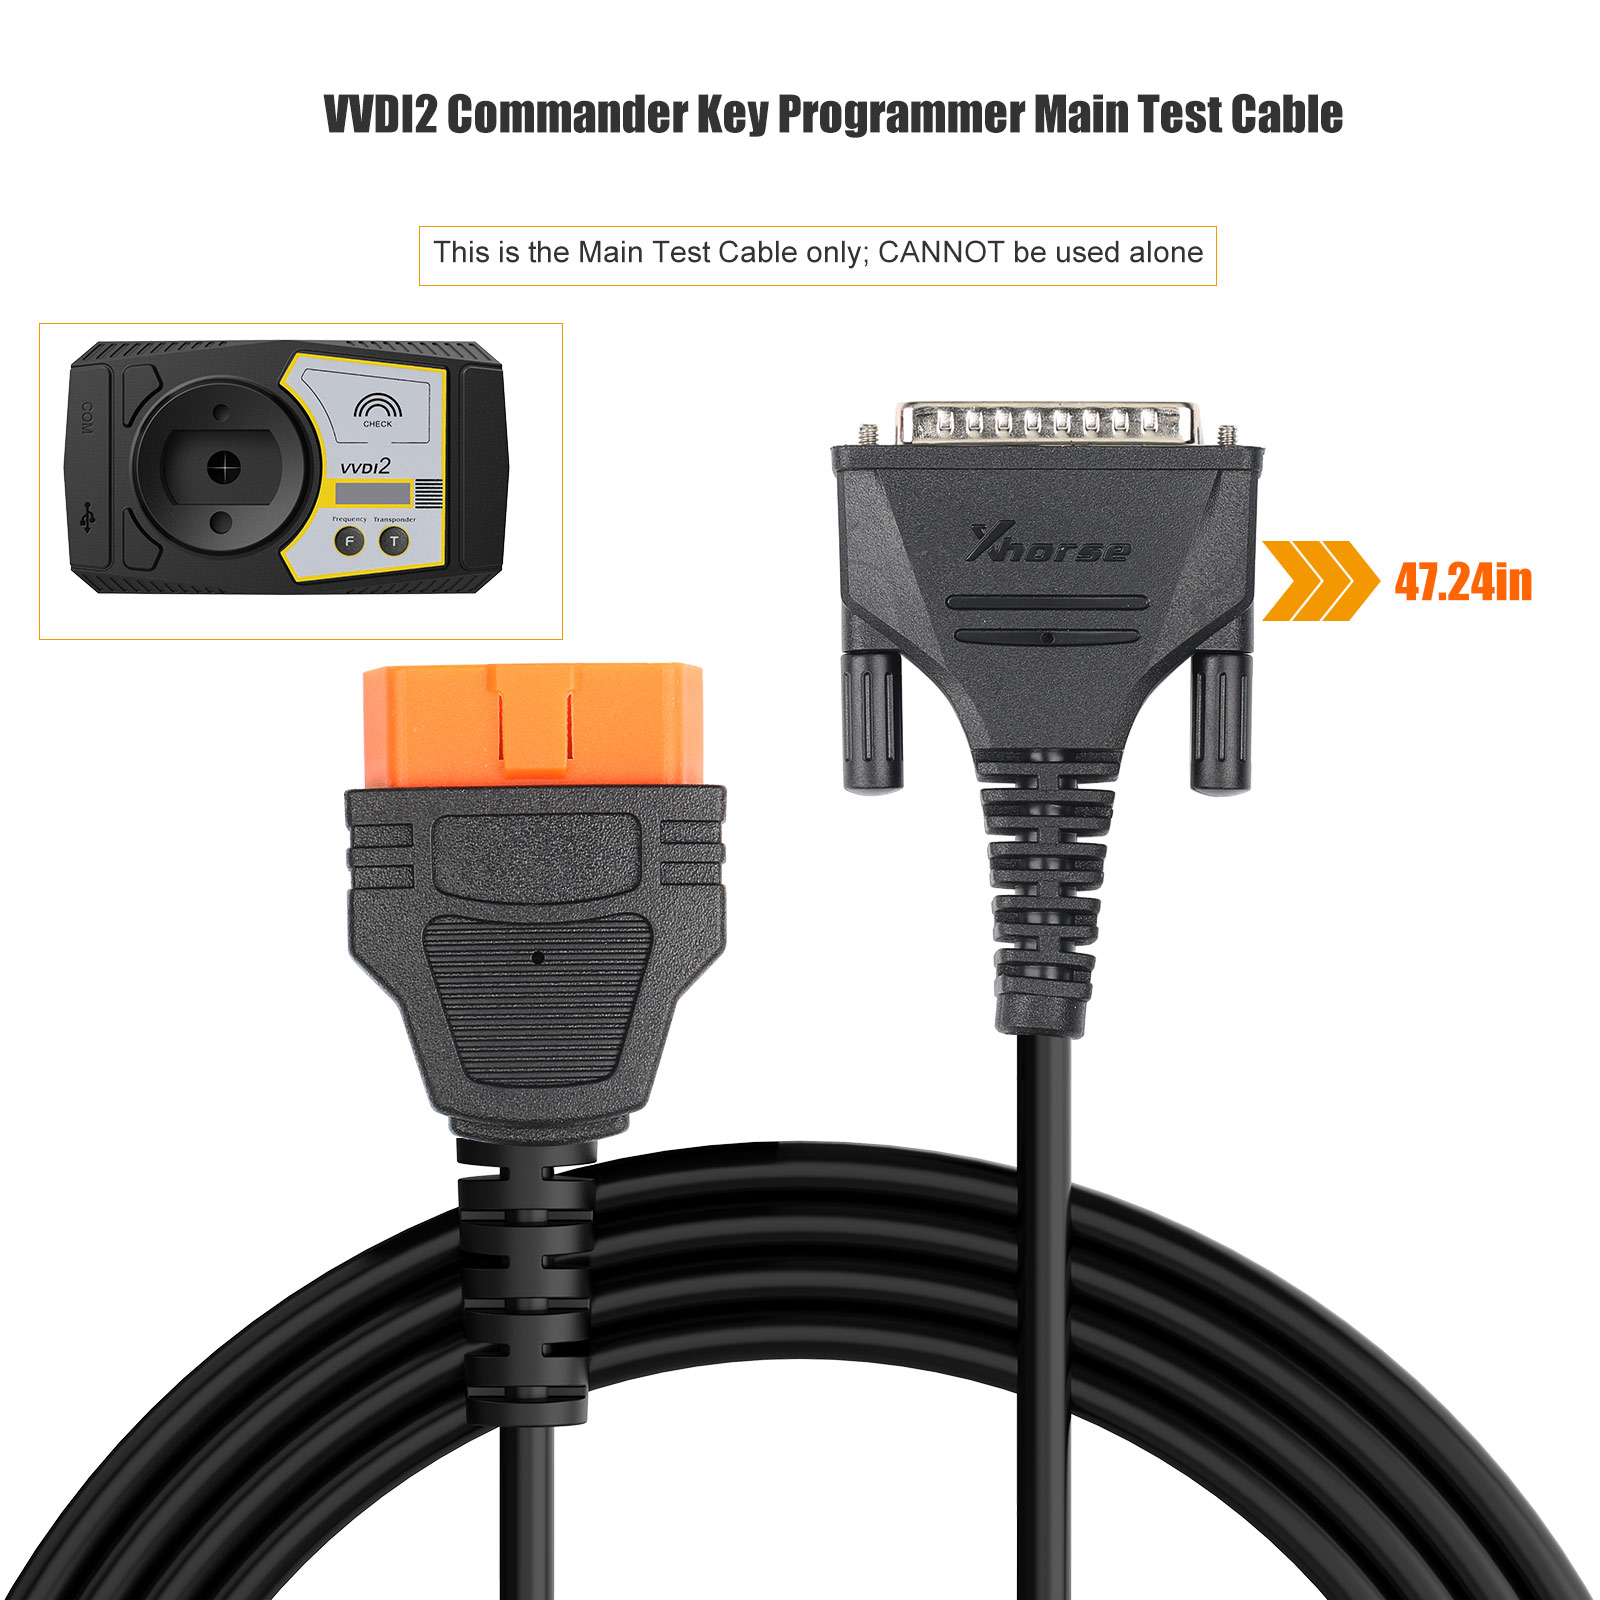 главный тестовый кабель Xhorse VVDI2, используемый командором VVDI 2